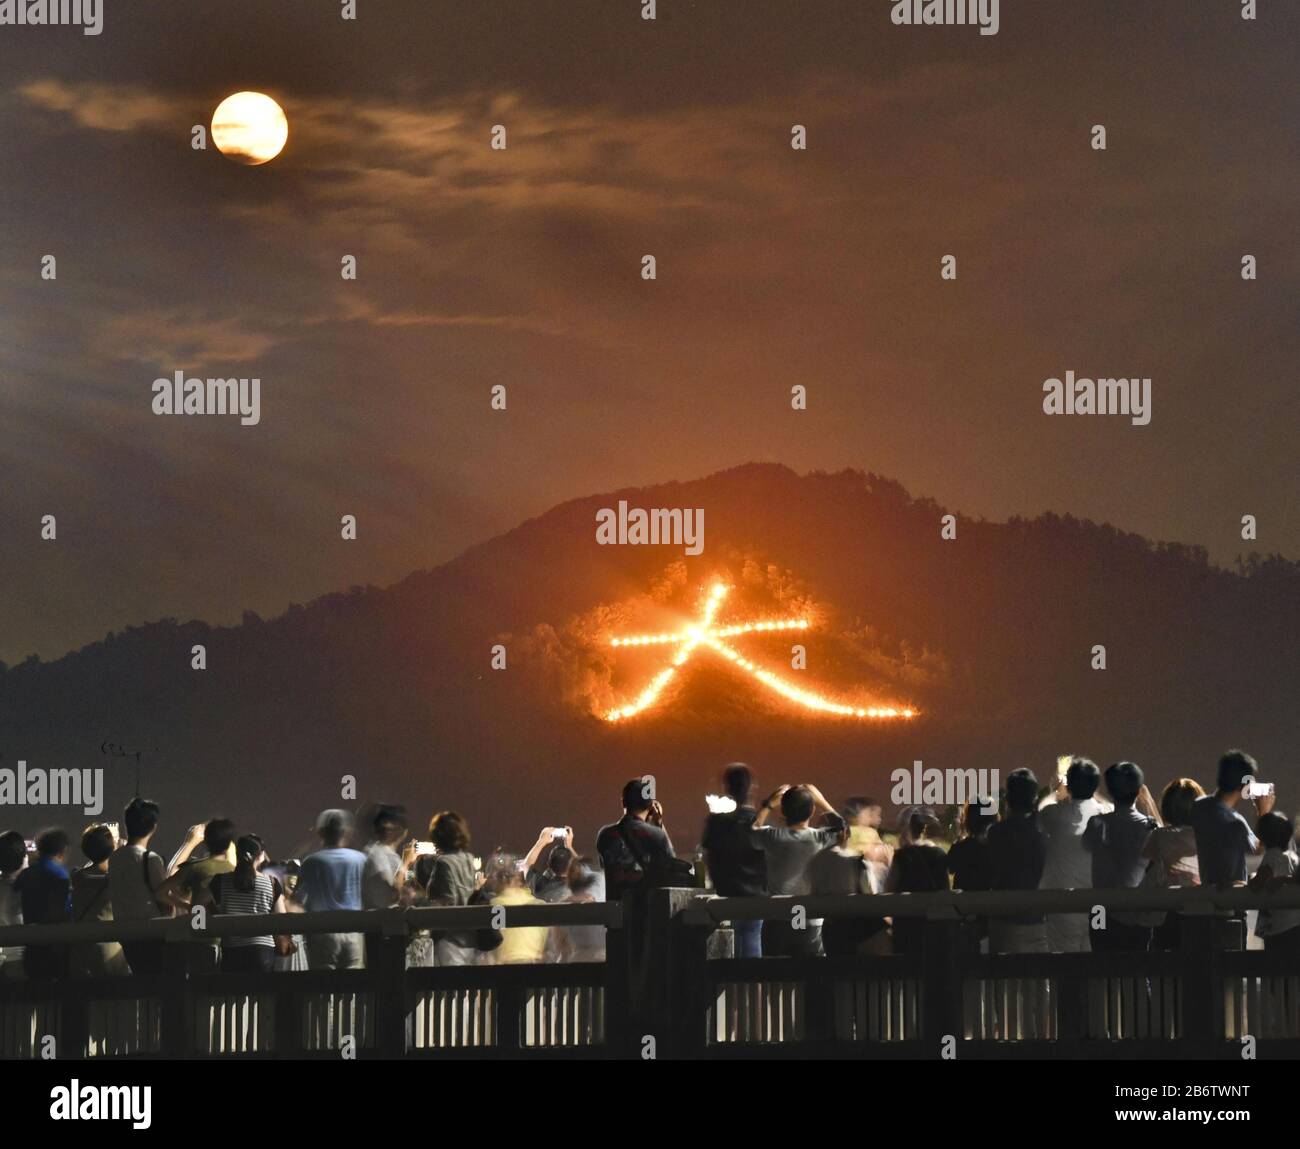 Das Foto, das in der Nacht vom 16. August 2019 aufgenommen wurde, zeigt ein Feuer in Form eines riesigen chinesischen Charakters, das auf einer Bergseite "groß" bedeutet, während des Daimonji-Festivals, eines der berühmtesten Ereignisse in Kyoto. Auf dem Festival, das offiziell als Gozan no Okuribi bekannt ist, werden fünf riesige Lagerfeuer auf Bergen rund um die Stadt im Höhepunkt der Obon-Zeit im Sommer angezündet. In Japan wird vermutet, dass die Geister der Vorfahren jedes Jahr während Obons in diese Welt zurückkehren, um ihre Verwandten zu besuchen. Der Zweck der Lagerfeuer besteht darin, diese Seelen zurück in den Himmel zu führen. (Kyodo)==Kyodo Foto über Newscom Stockfoto